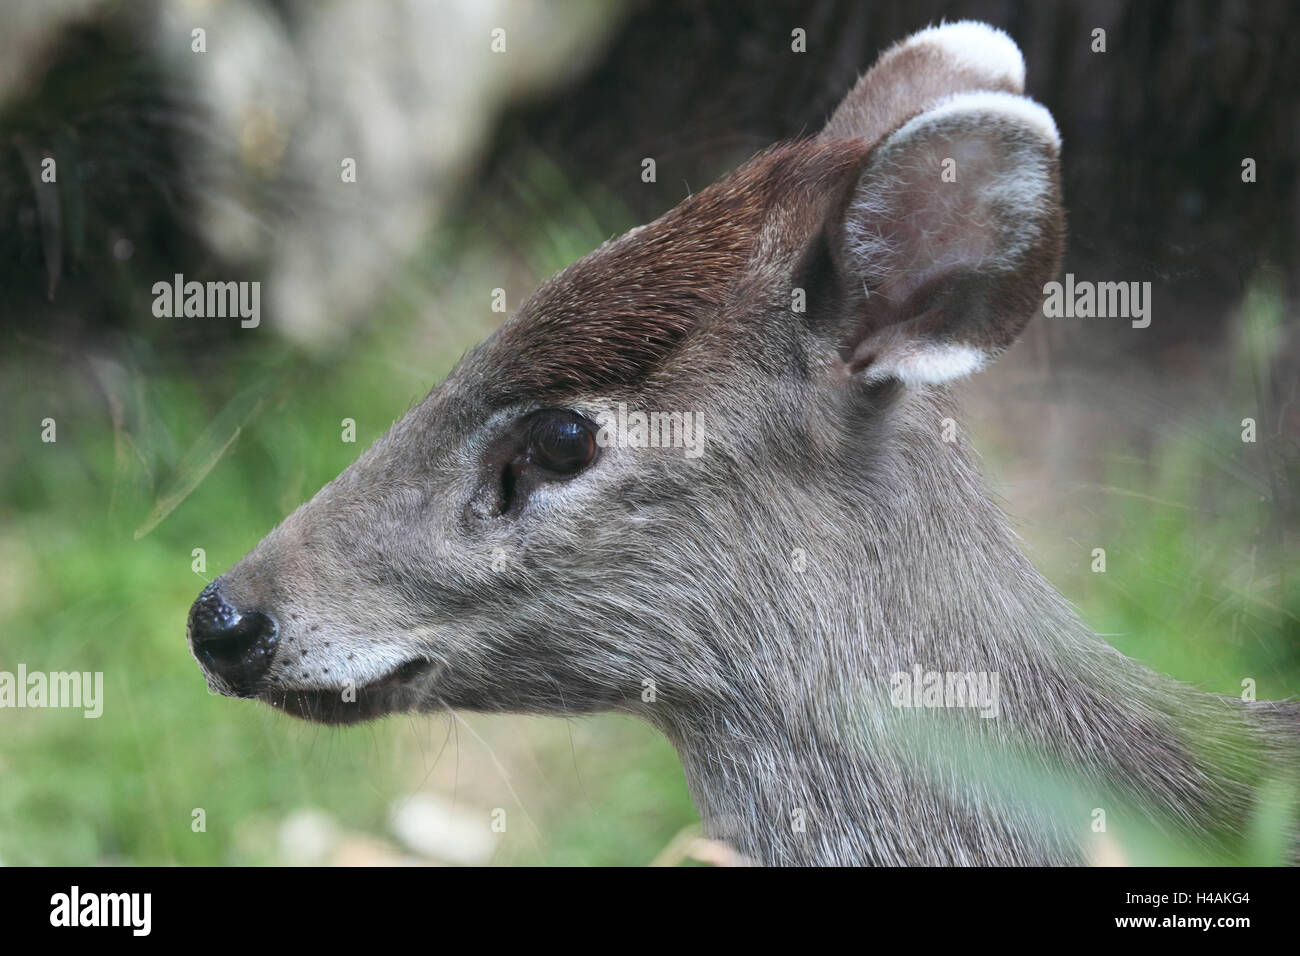 Shock hair deer, Stock Photo